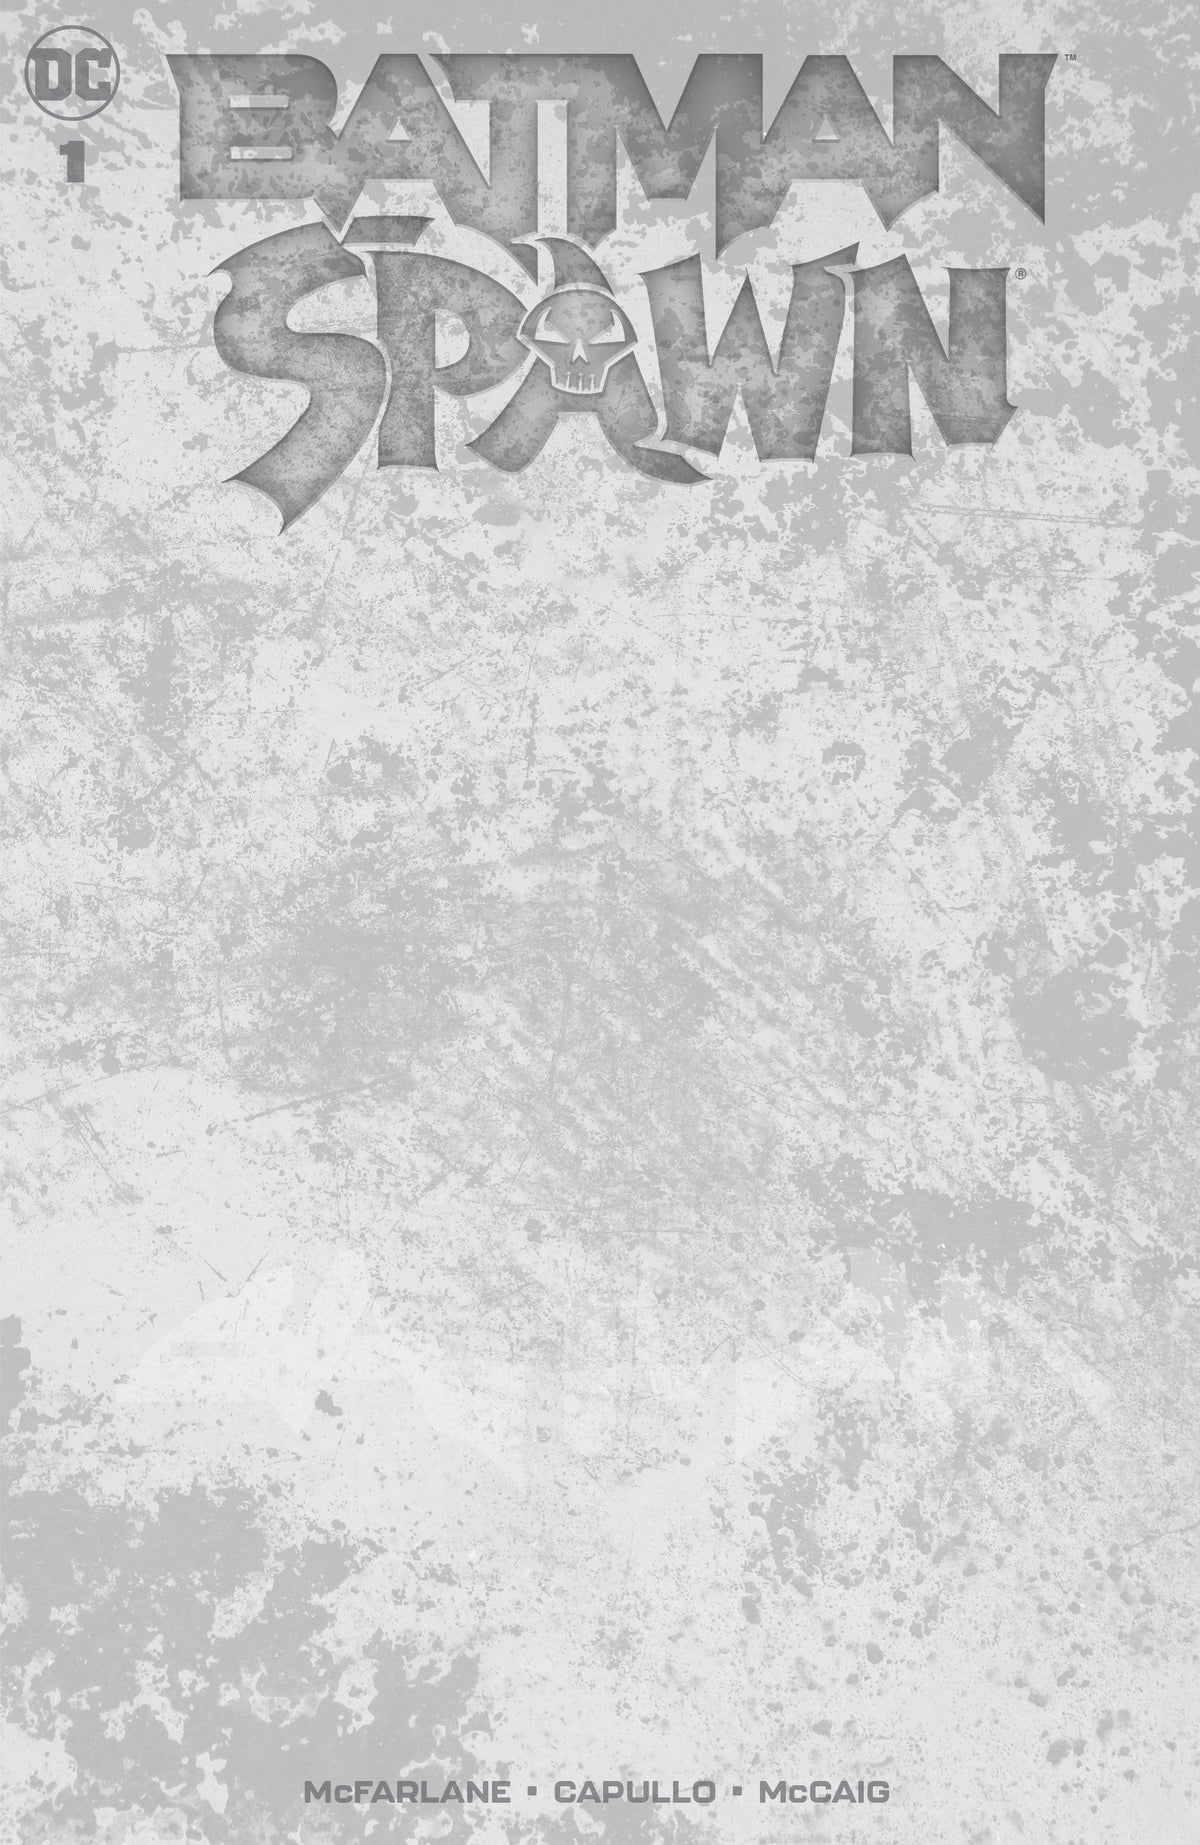 BATMAN SPAWN #1 (ONE SHOT) CVR I BLANK VAR - Third Eye